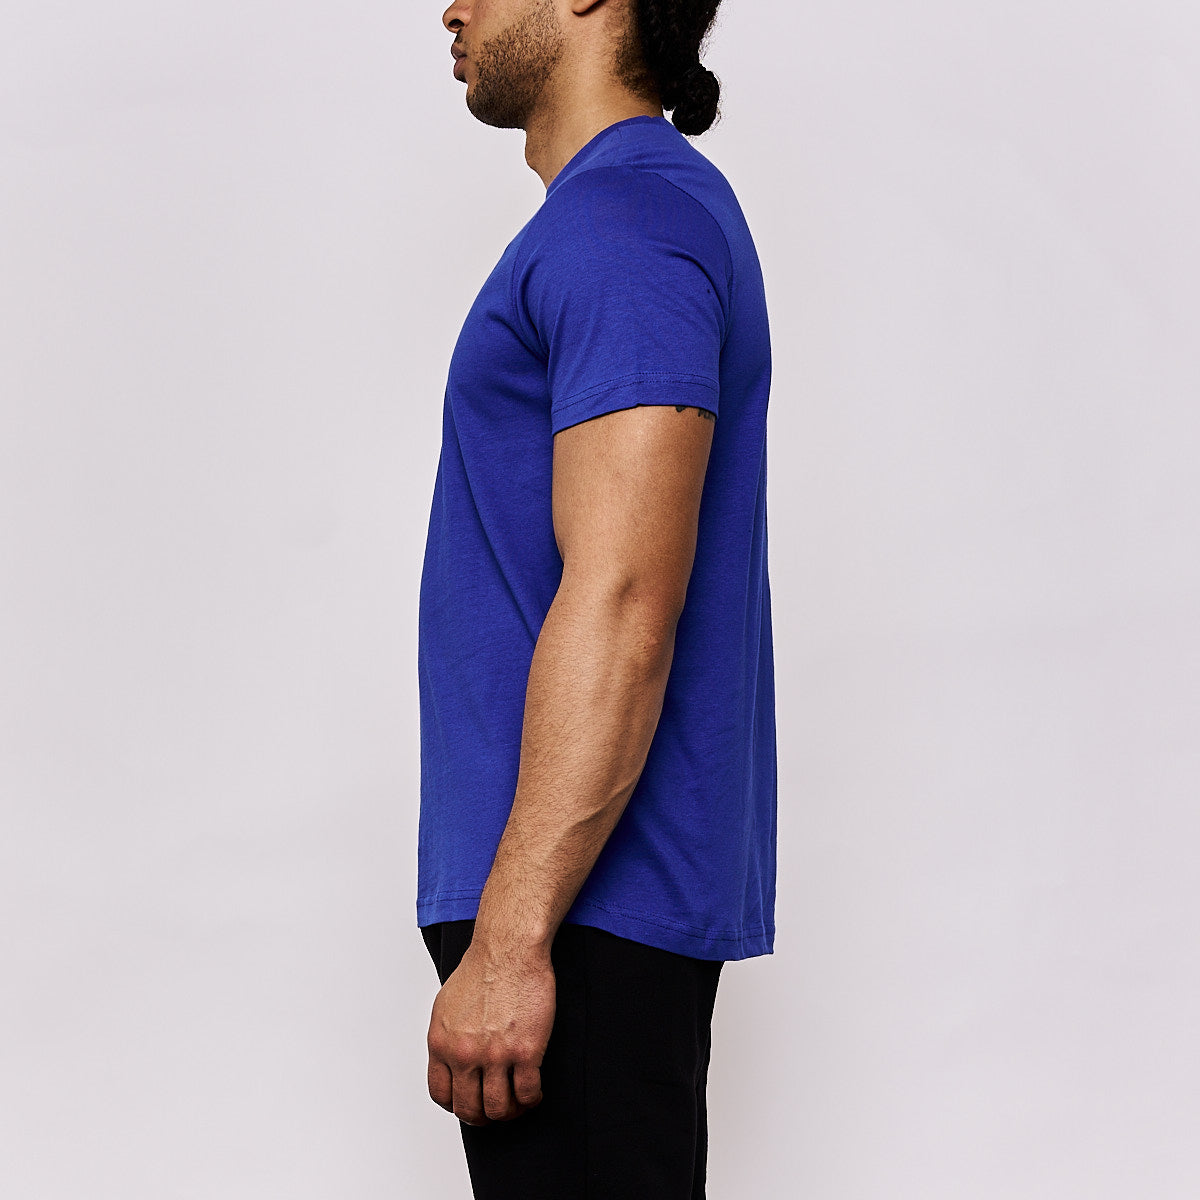 T-shirt Cafers Bleu Homme